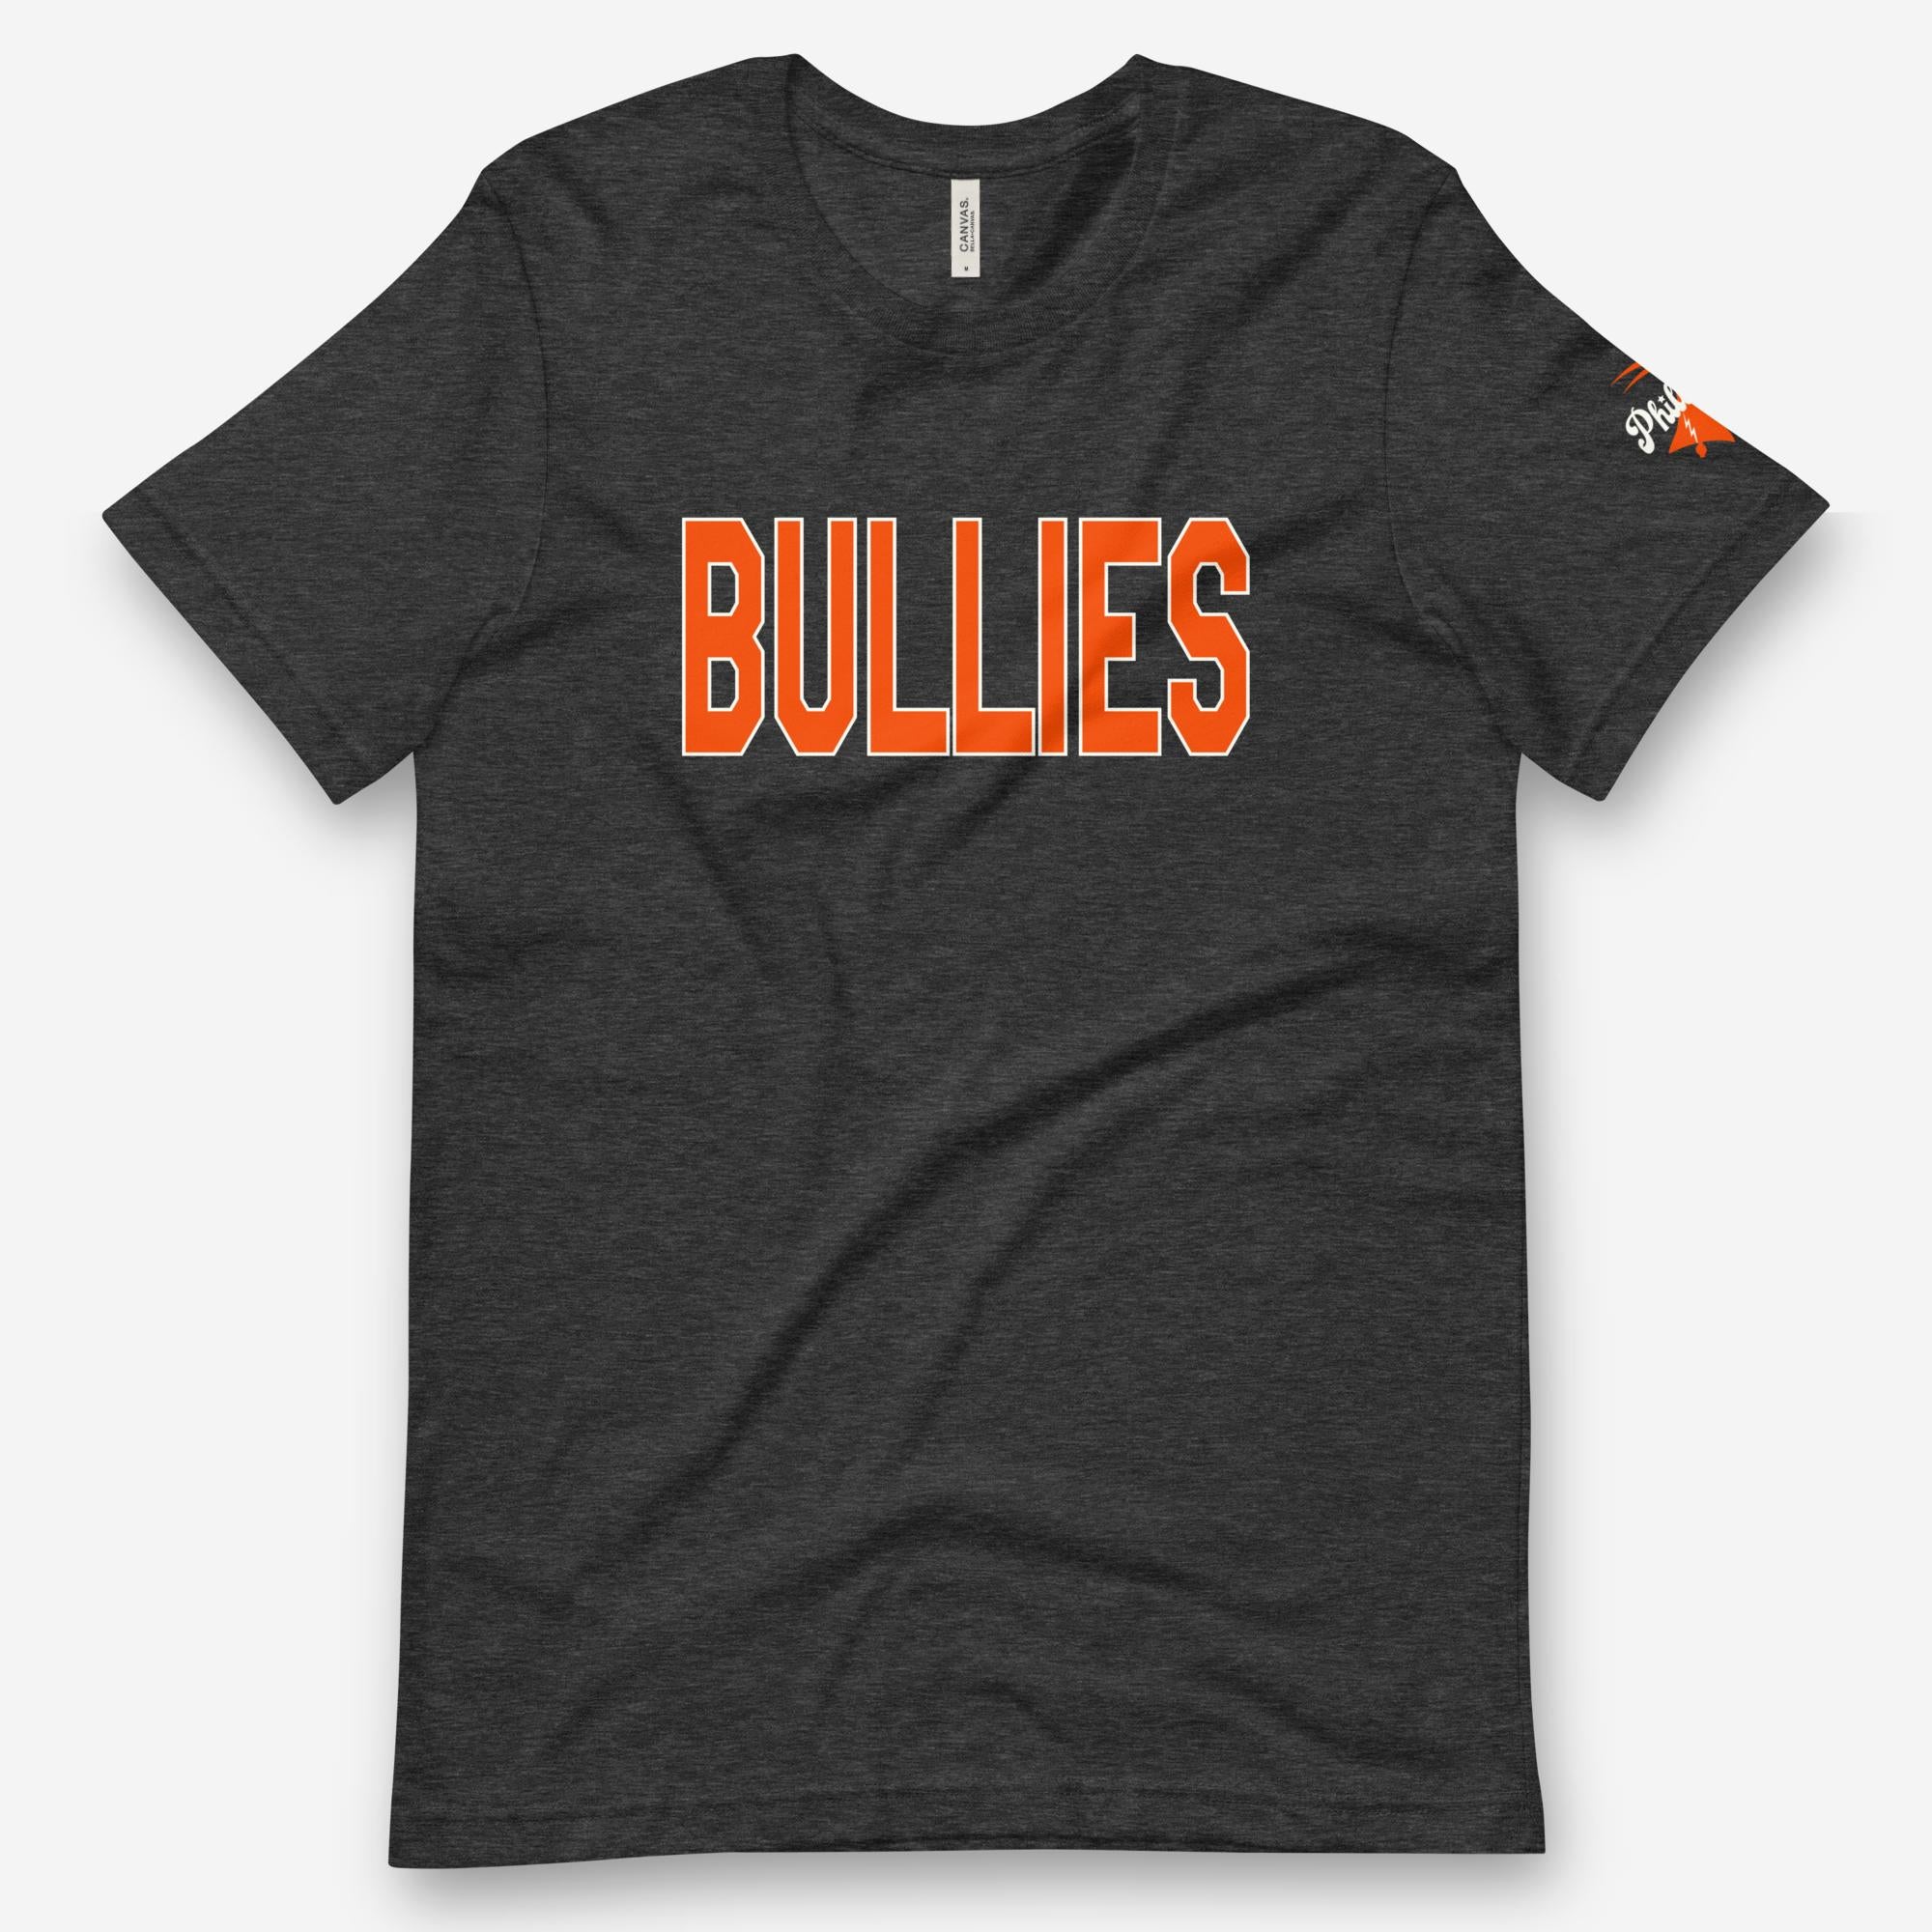 "Bullies" Tee